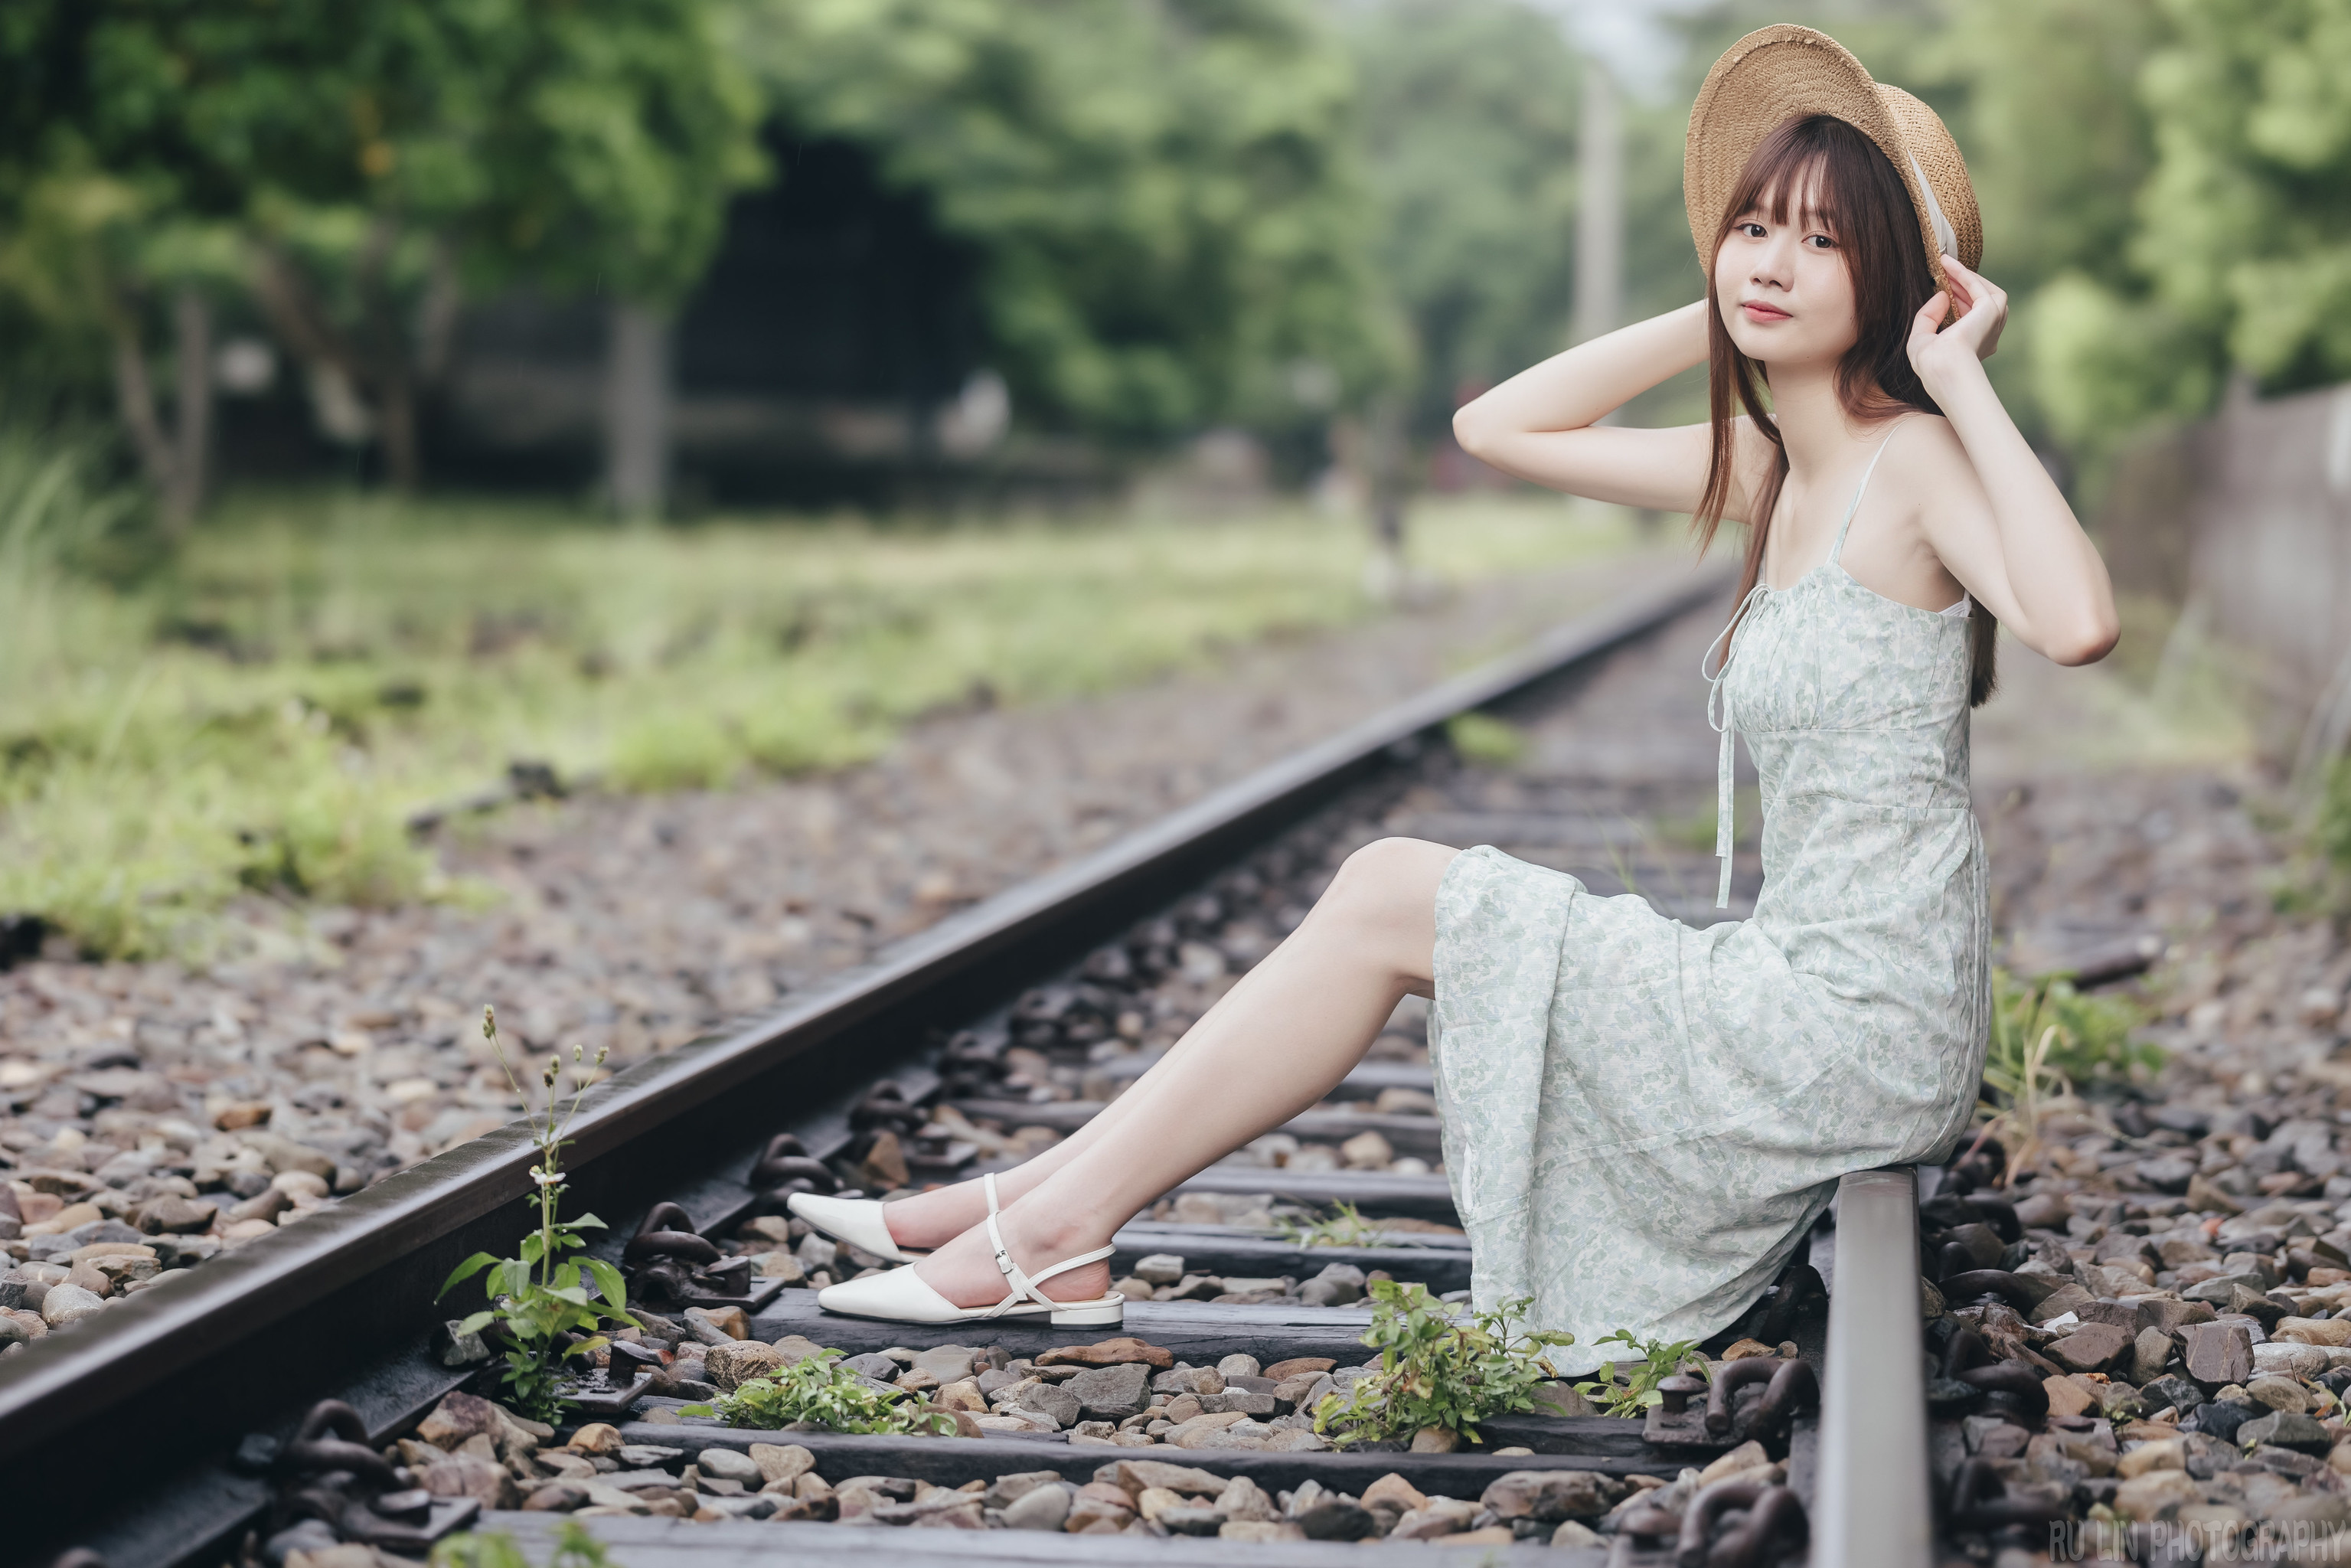 People 3071x2048 Ru Lin women Asian hat dress railway